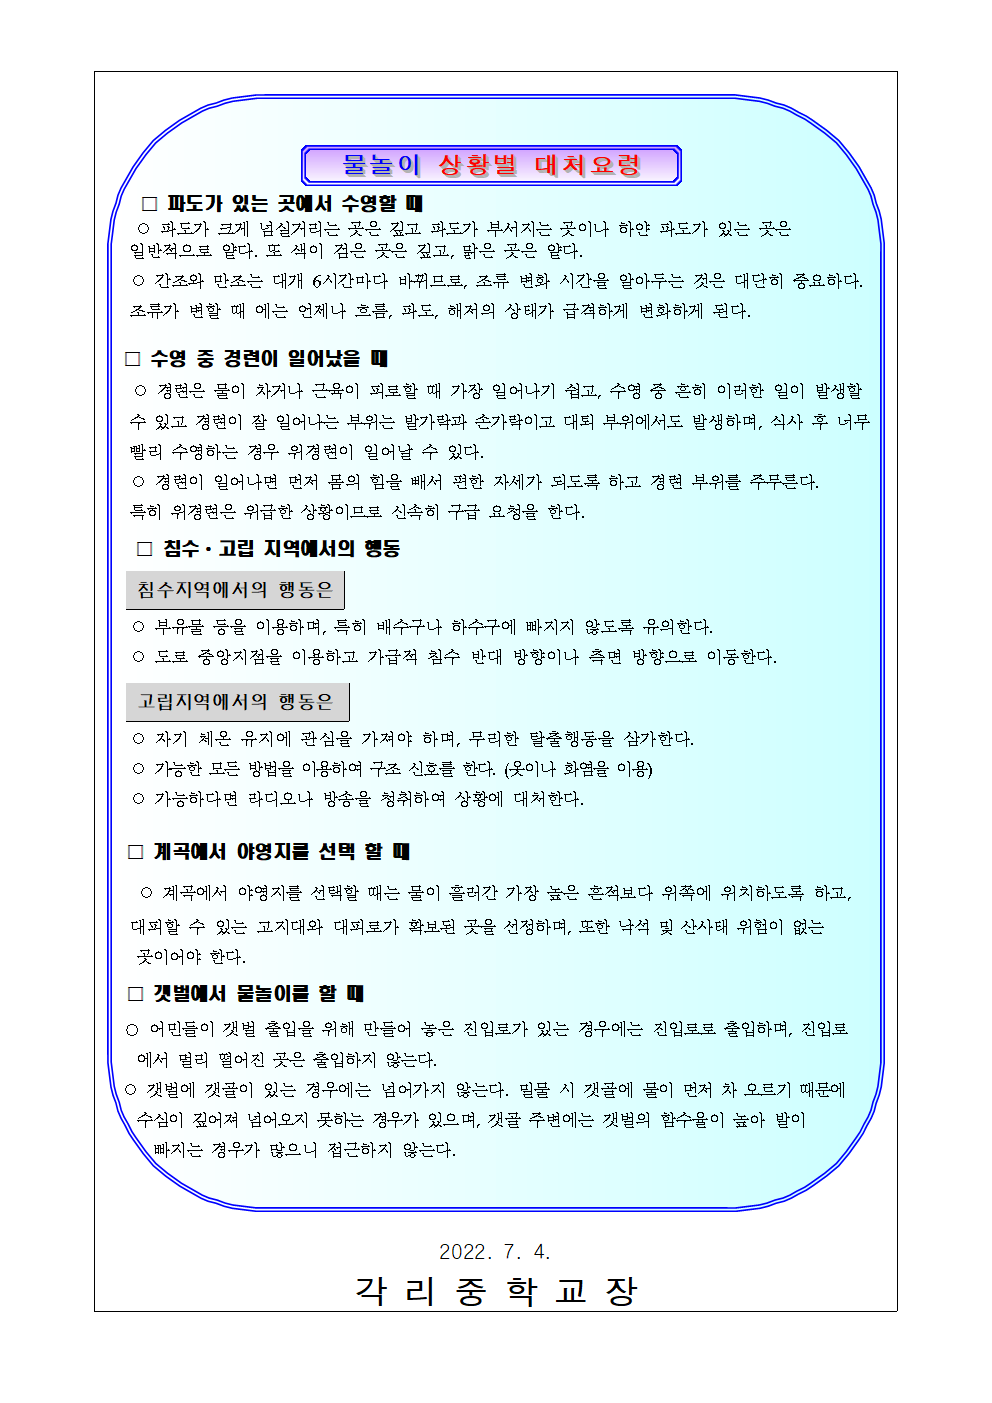 2022. 수상레포츠 안전수칙 및 물놀이 상황별 대처요령 안내 가정통신문002